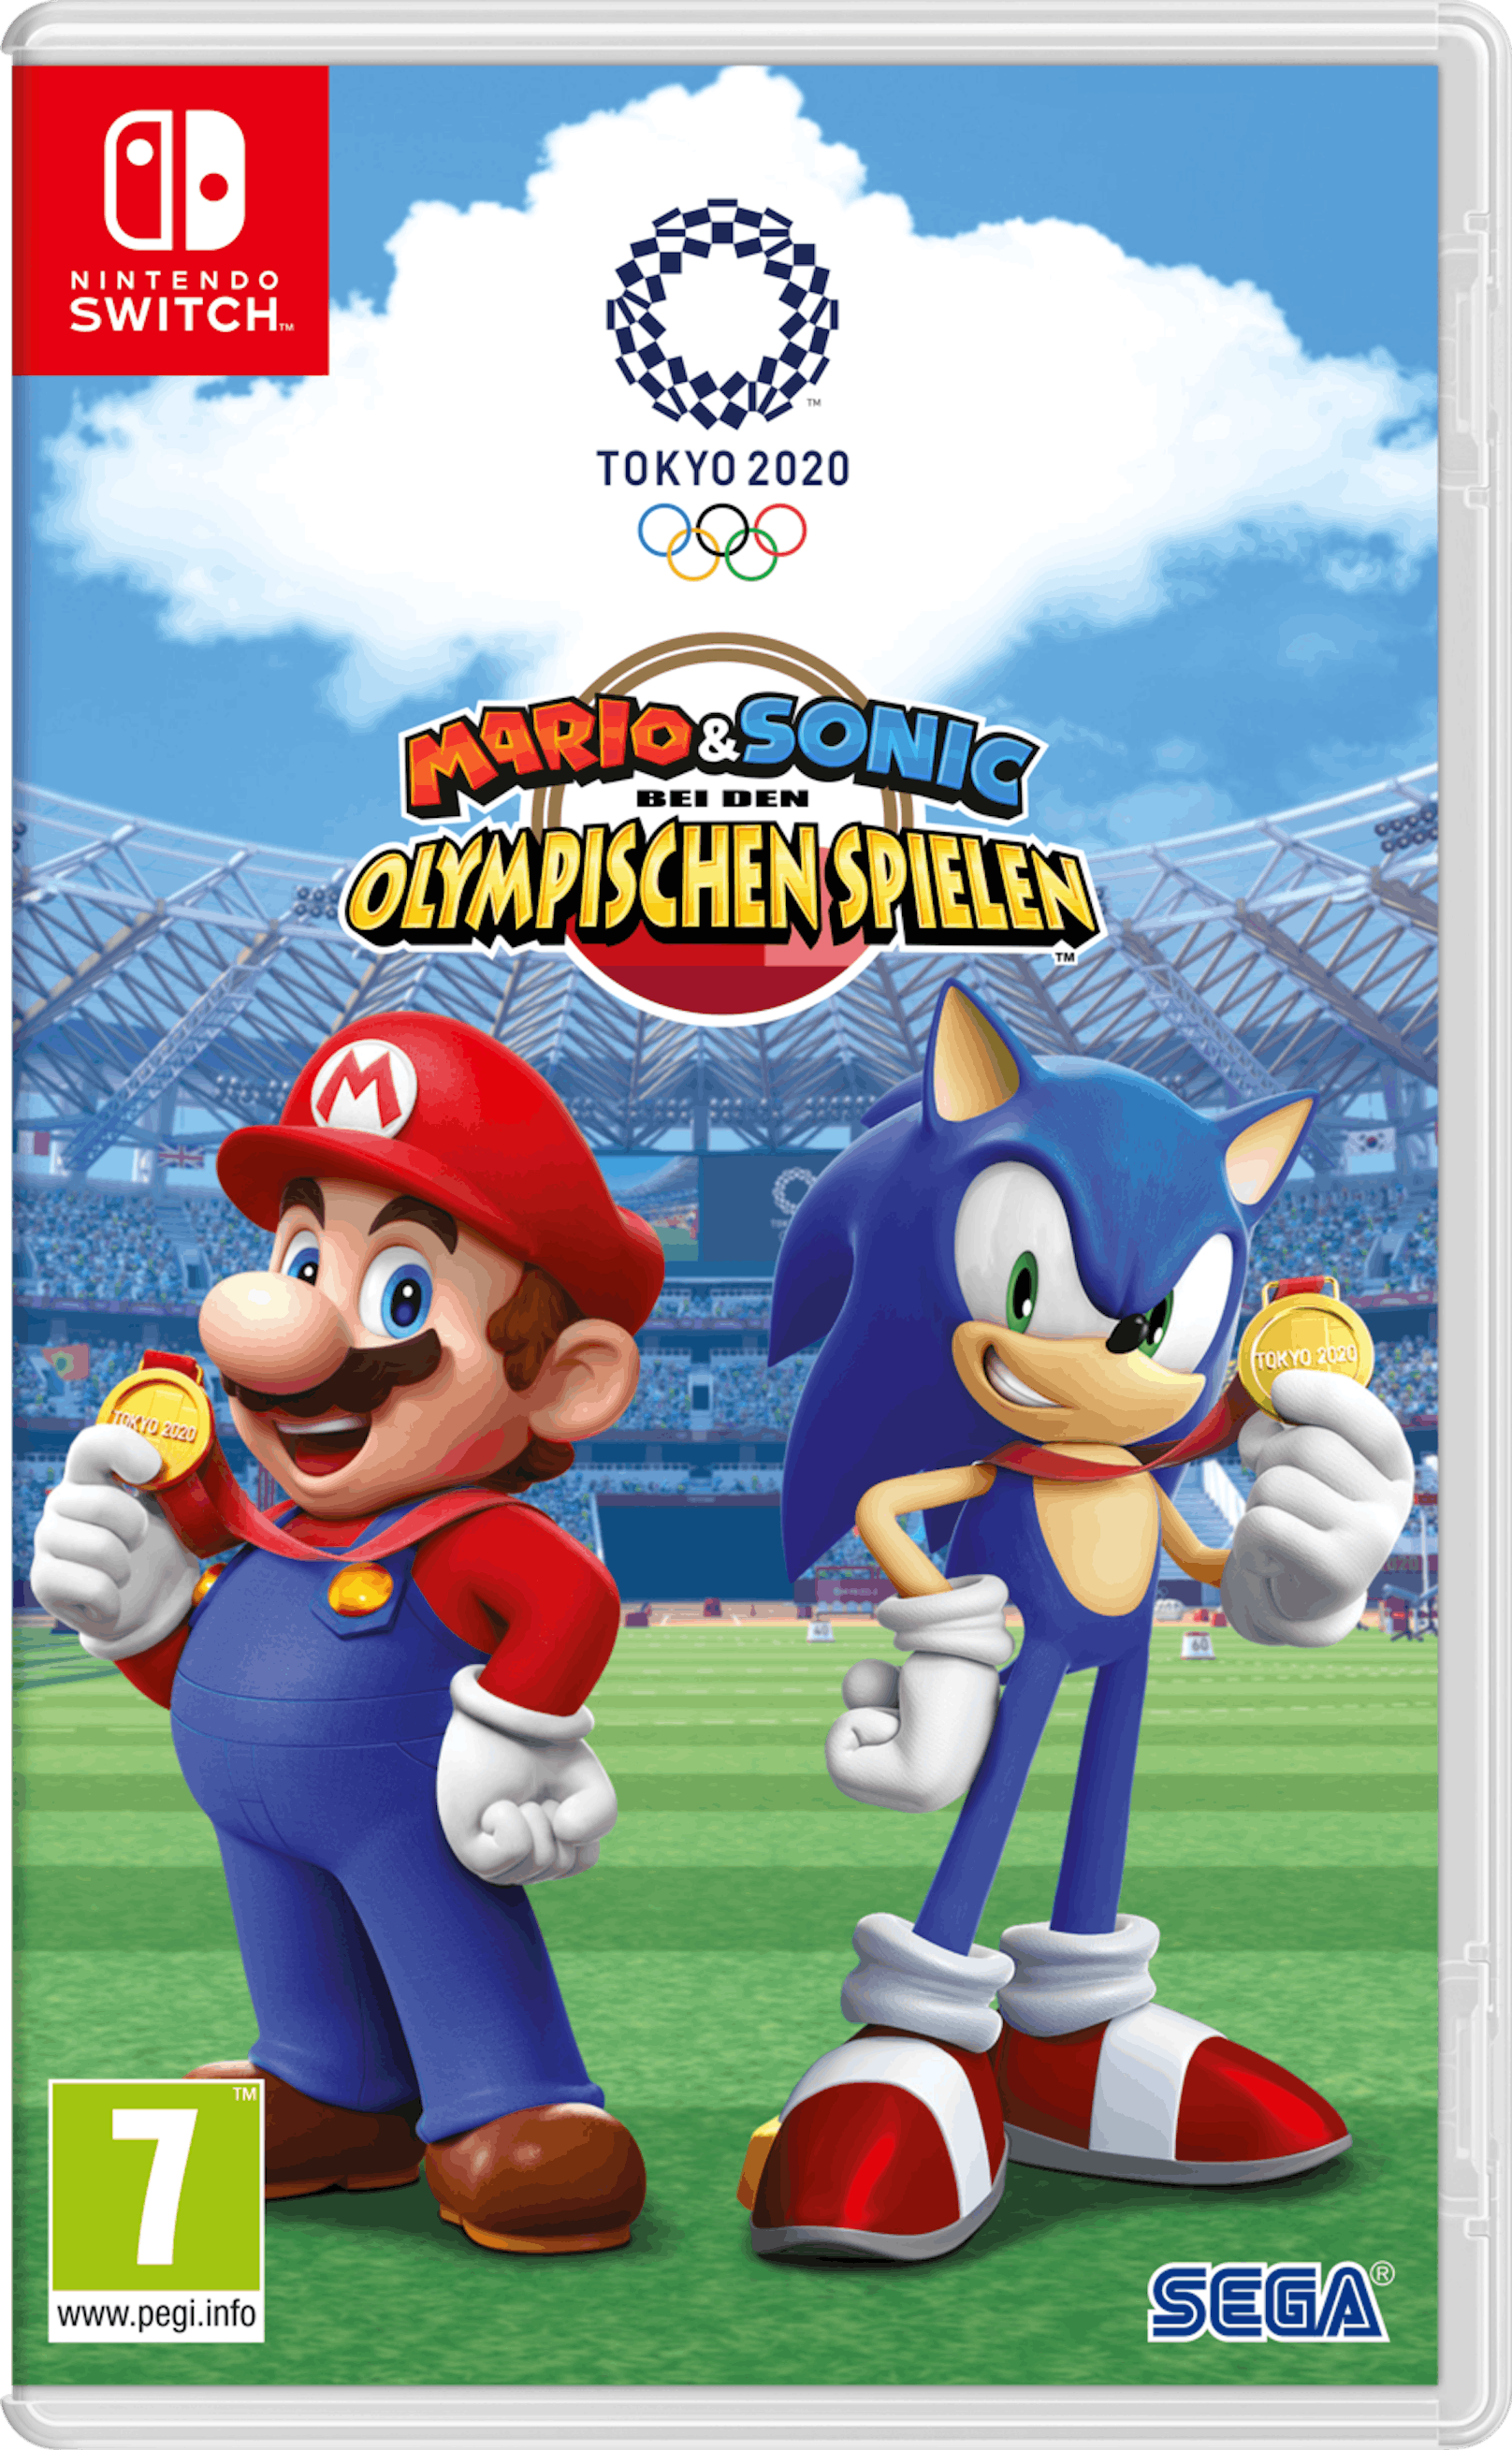 ... "Mario &amp; Sonic bei den Olympischen Spielen Tokyo 2020".